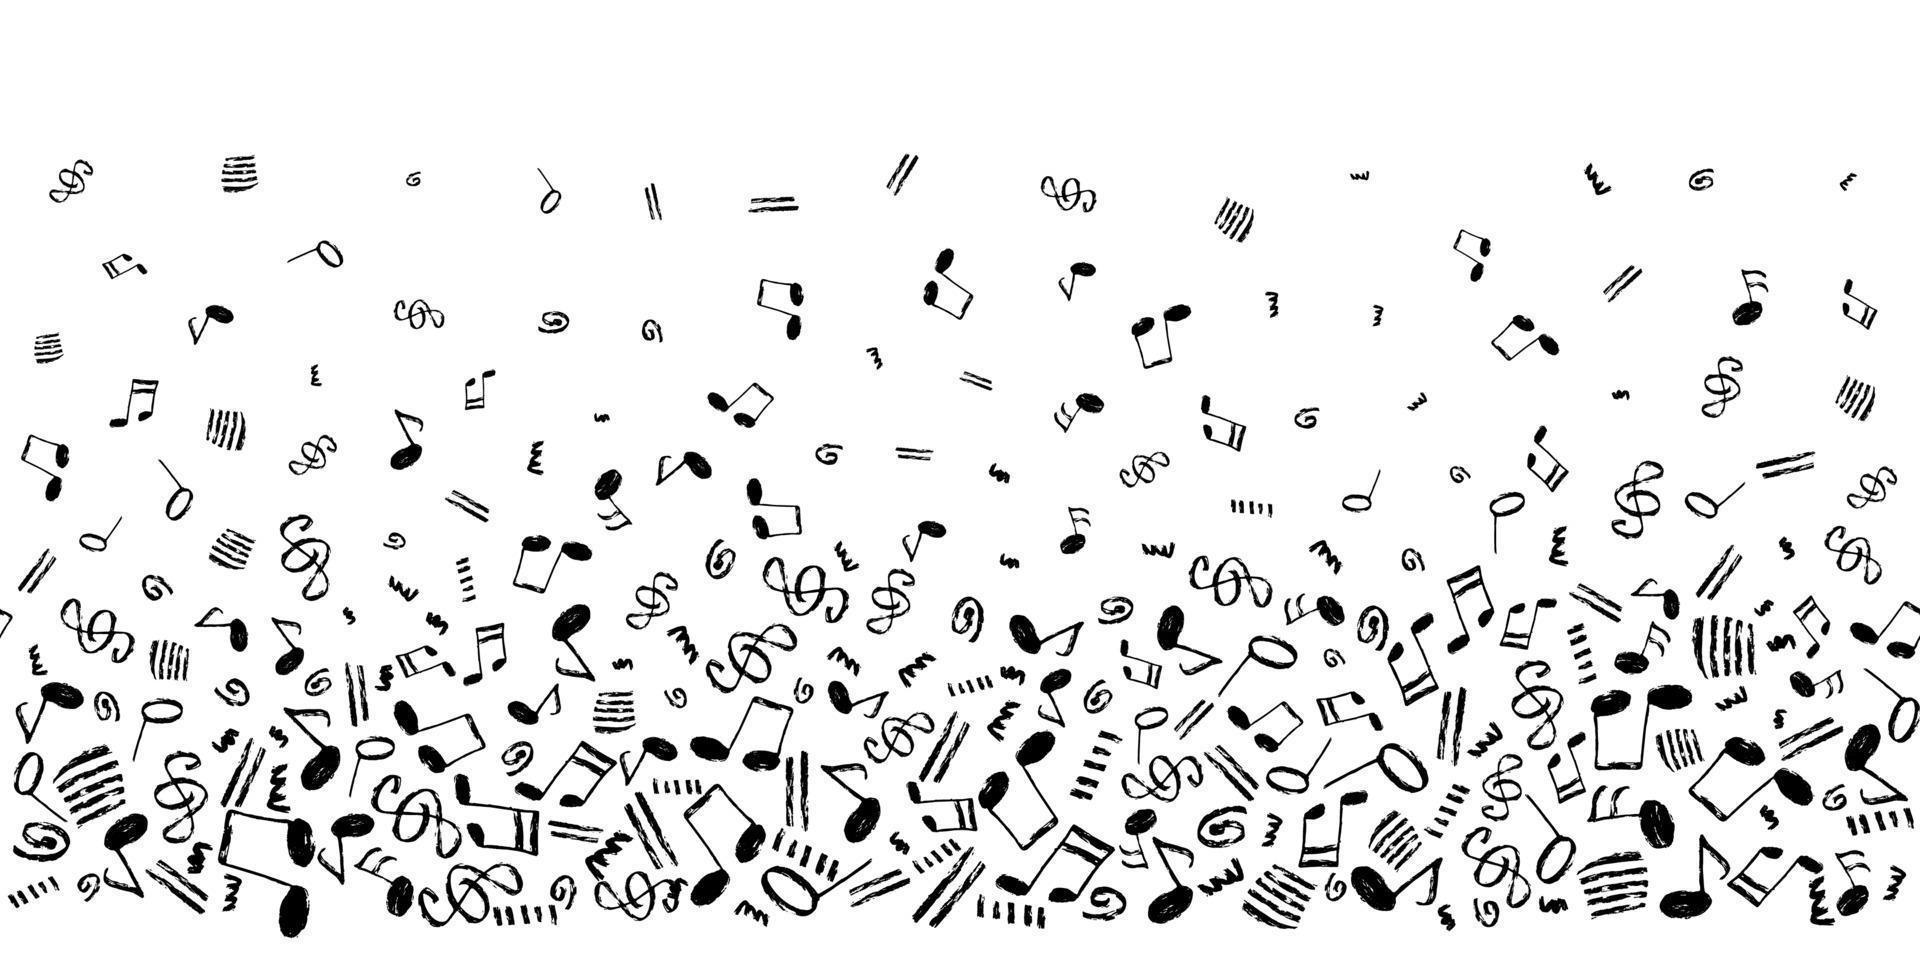 notas musicales vector de fondo sin fisuras. plantilla horizontal con un patrón de borde de elementos musicales dibujados a mano en color negro.